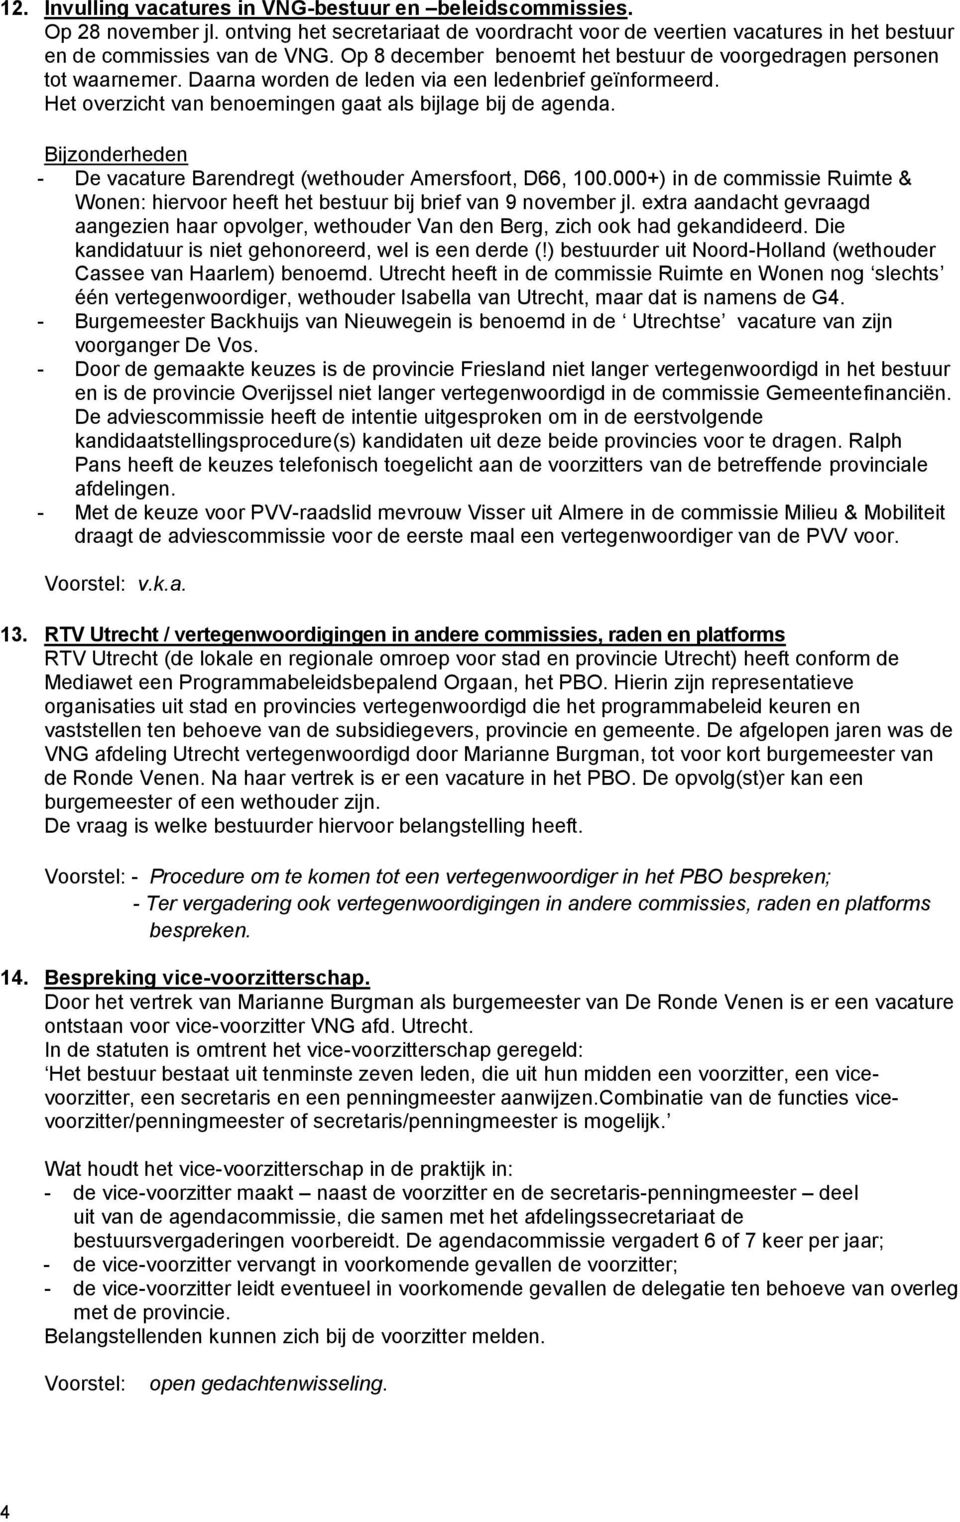 Bijzonderheden - De vacature Barendregt (wethouder Amersfoort, D66, 100.000+) in de commissie Ruimte & Wonen: hiervoor heeft het bestuur bij brief van 9 november jl.